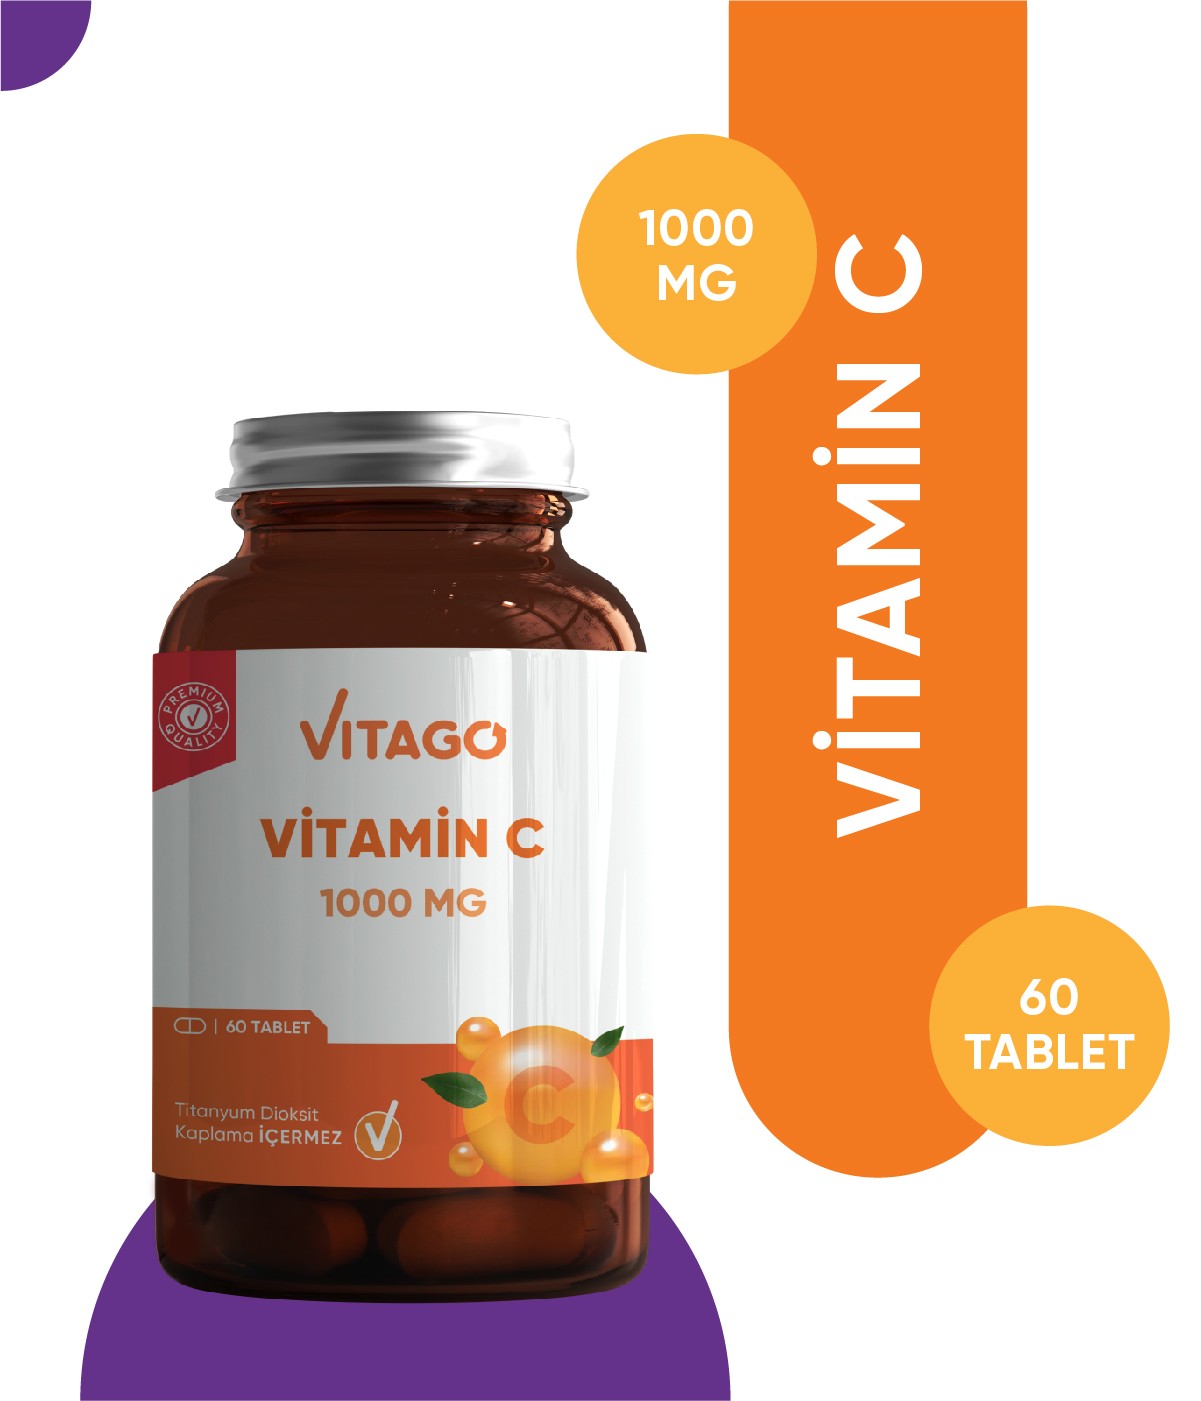 Vitago Premium Vitamin C 1000 MG İçeren Tablet Takviye Edici Gıda 60'lı